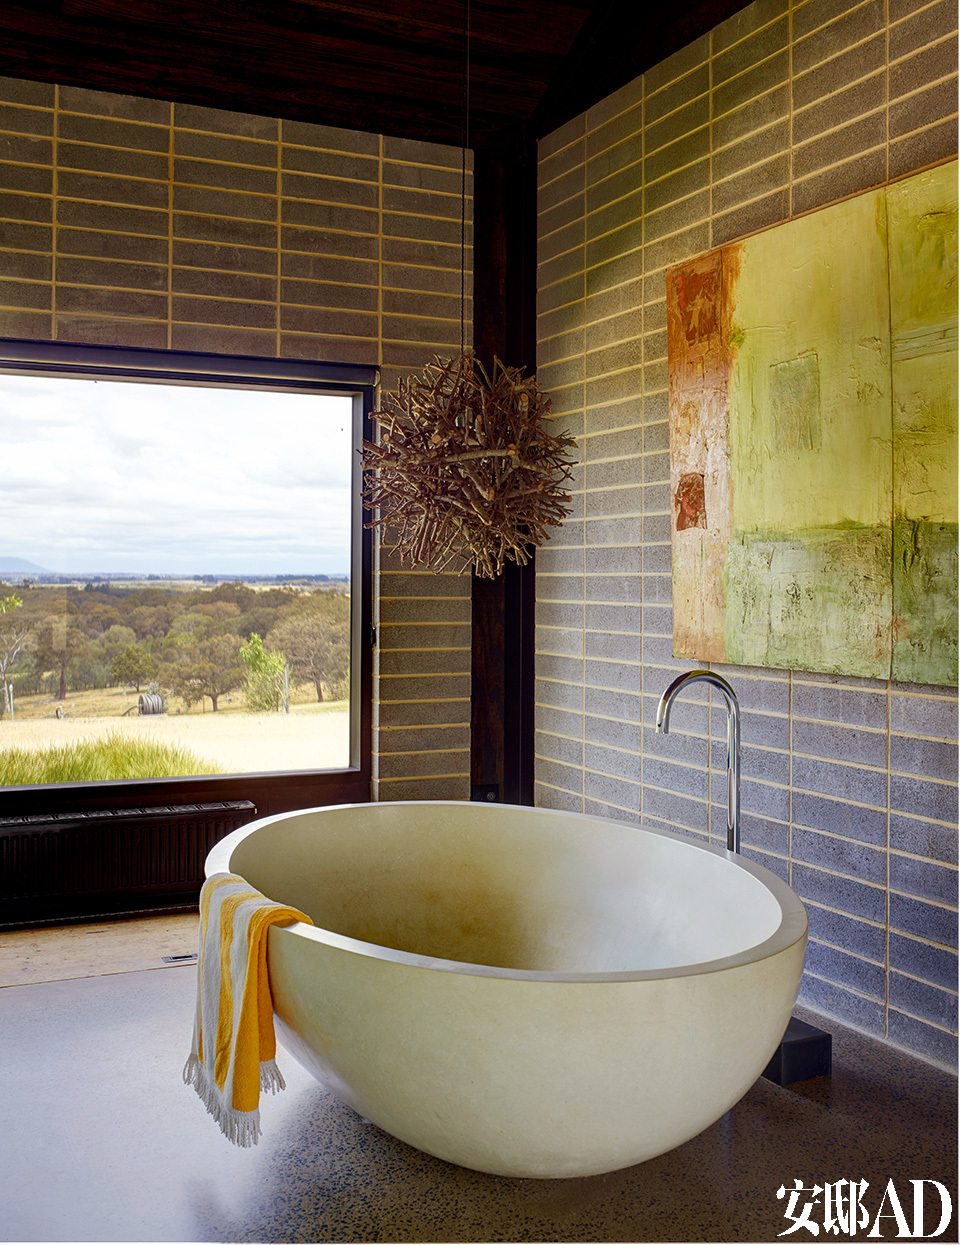 沐浴时最能净化人身心的，无外乎窗外沁人心脾的风景。主卧位于房屋的另一侧，浴缸来自Boyd Design。